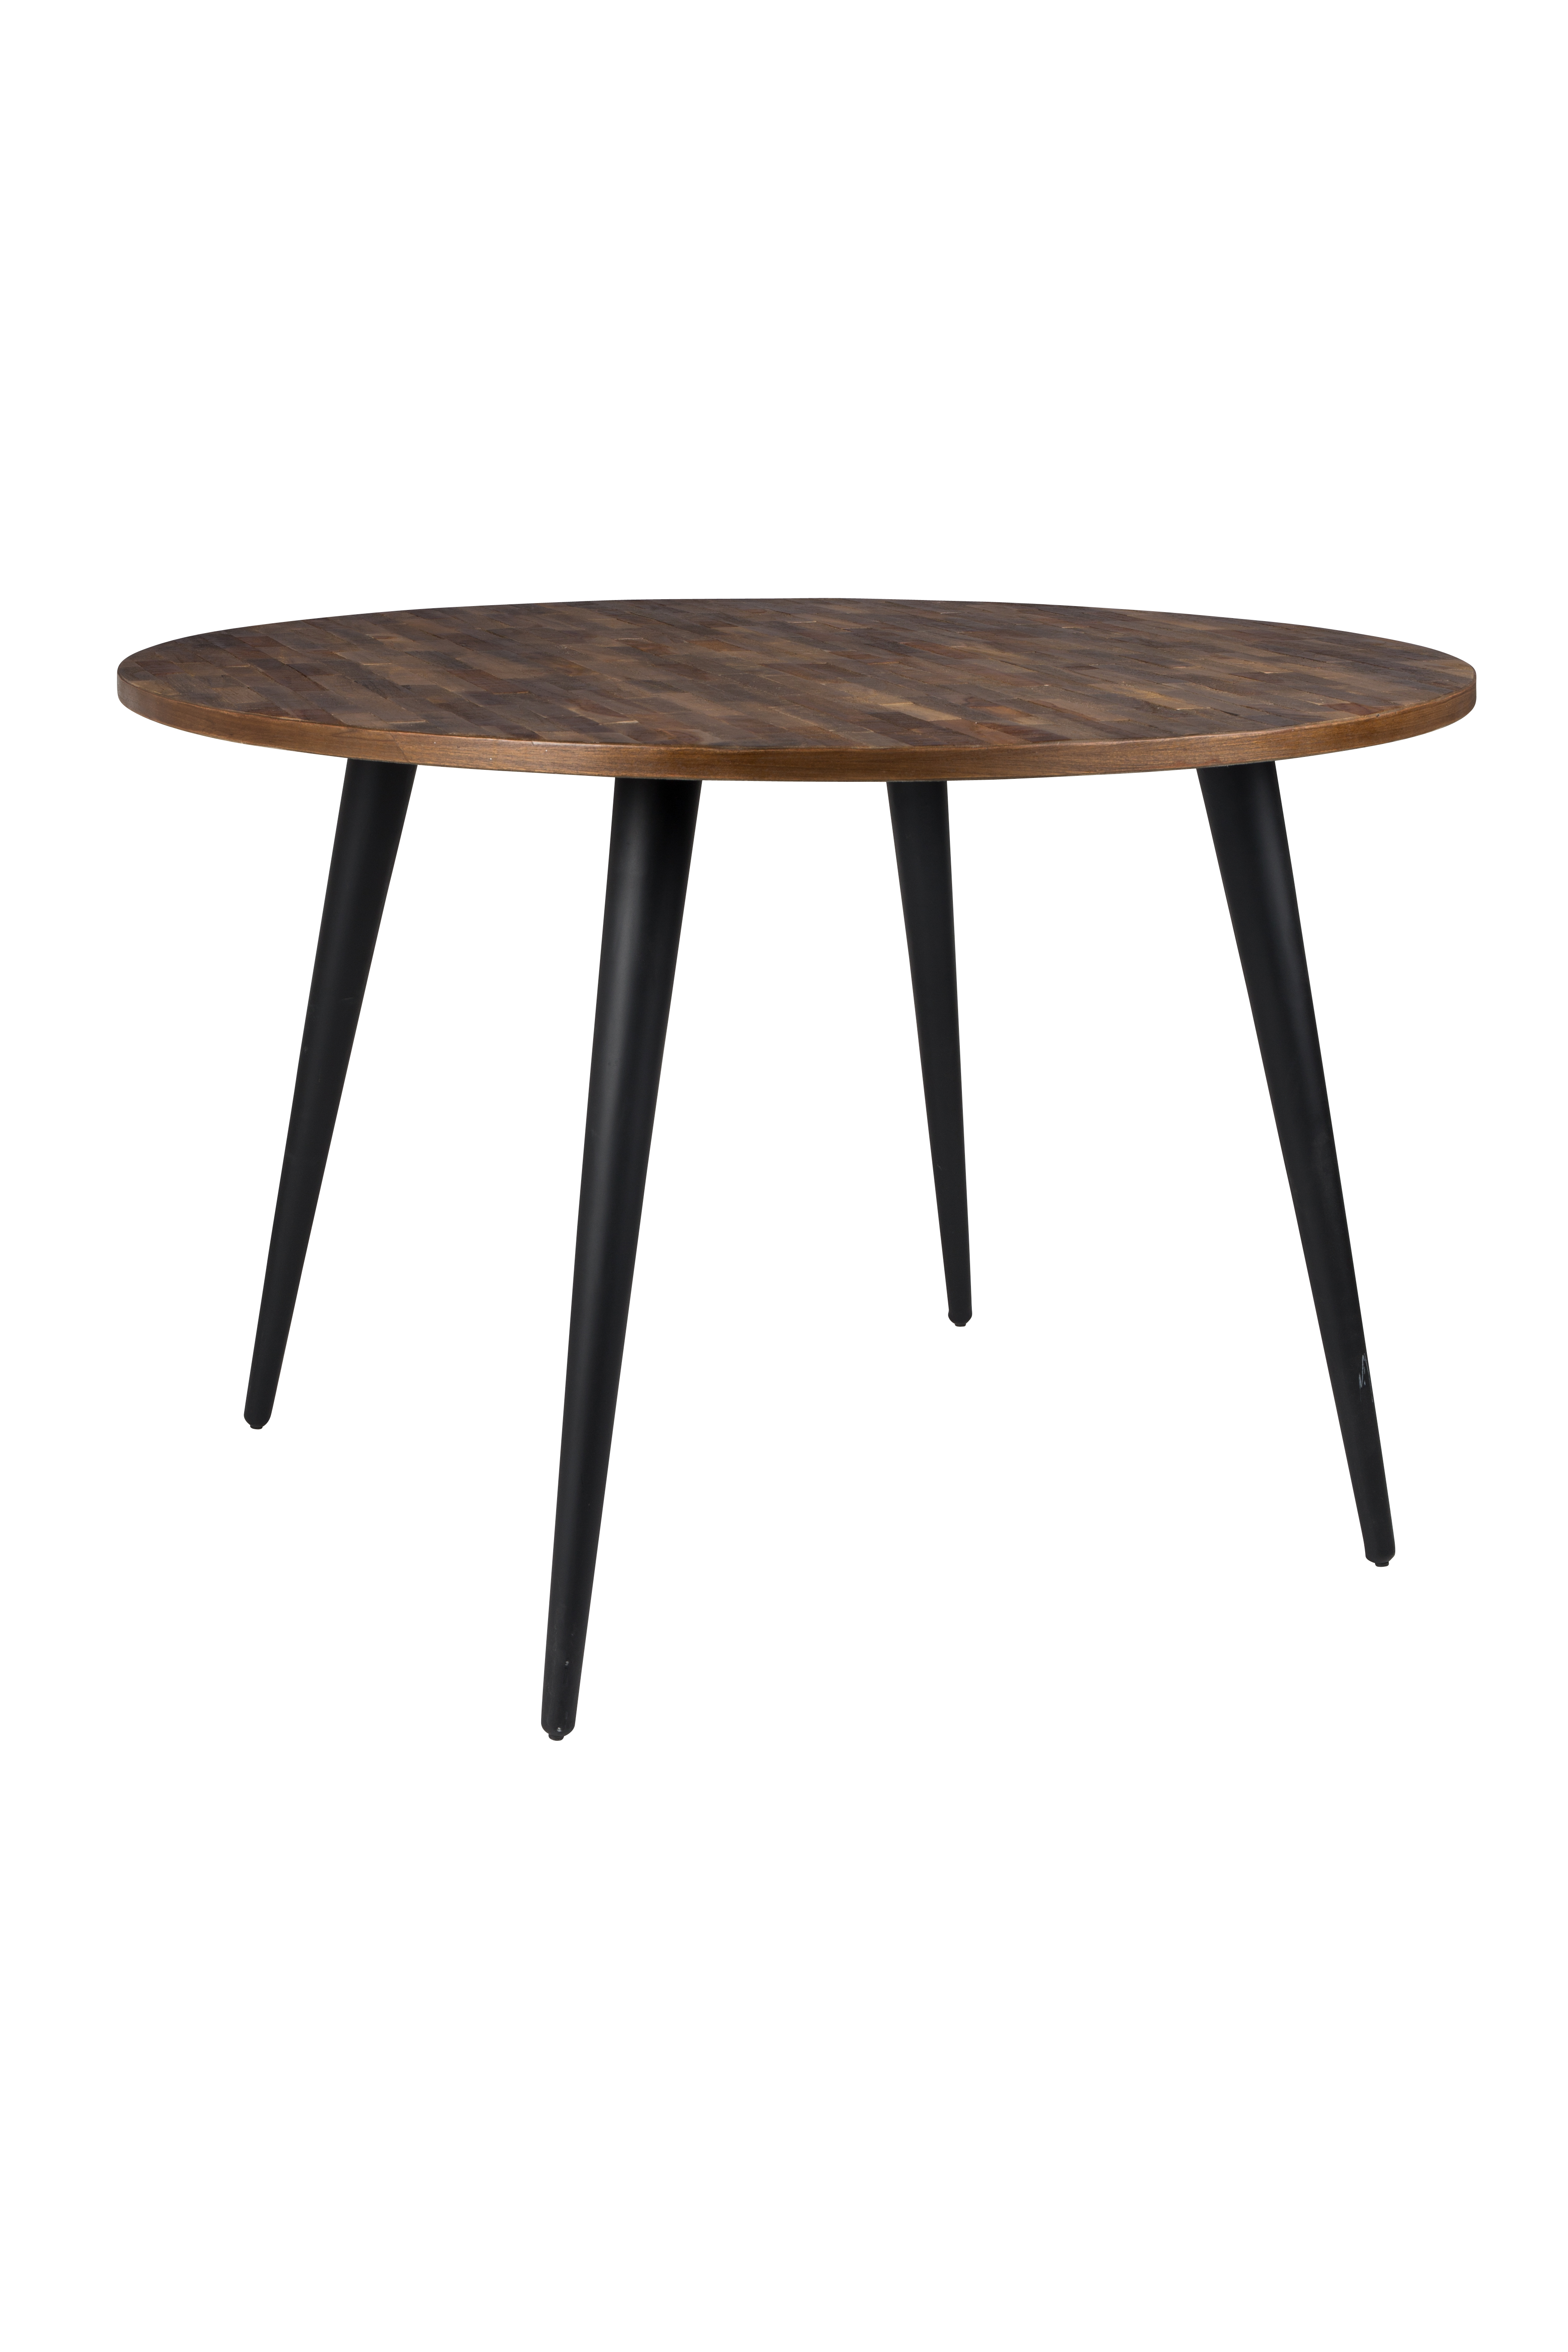 WL-Living Mo okrúhly stôl - Drevo - Výpredaj 2